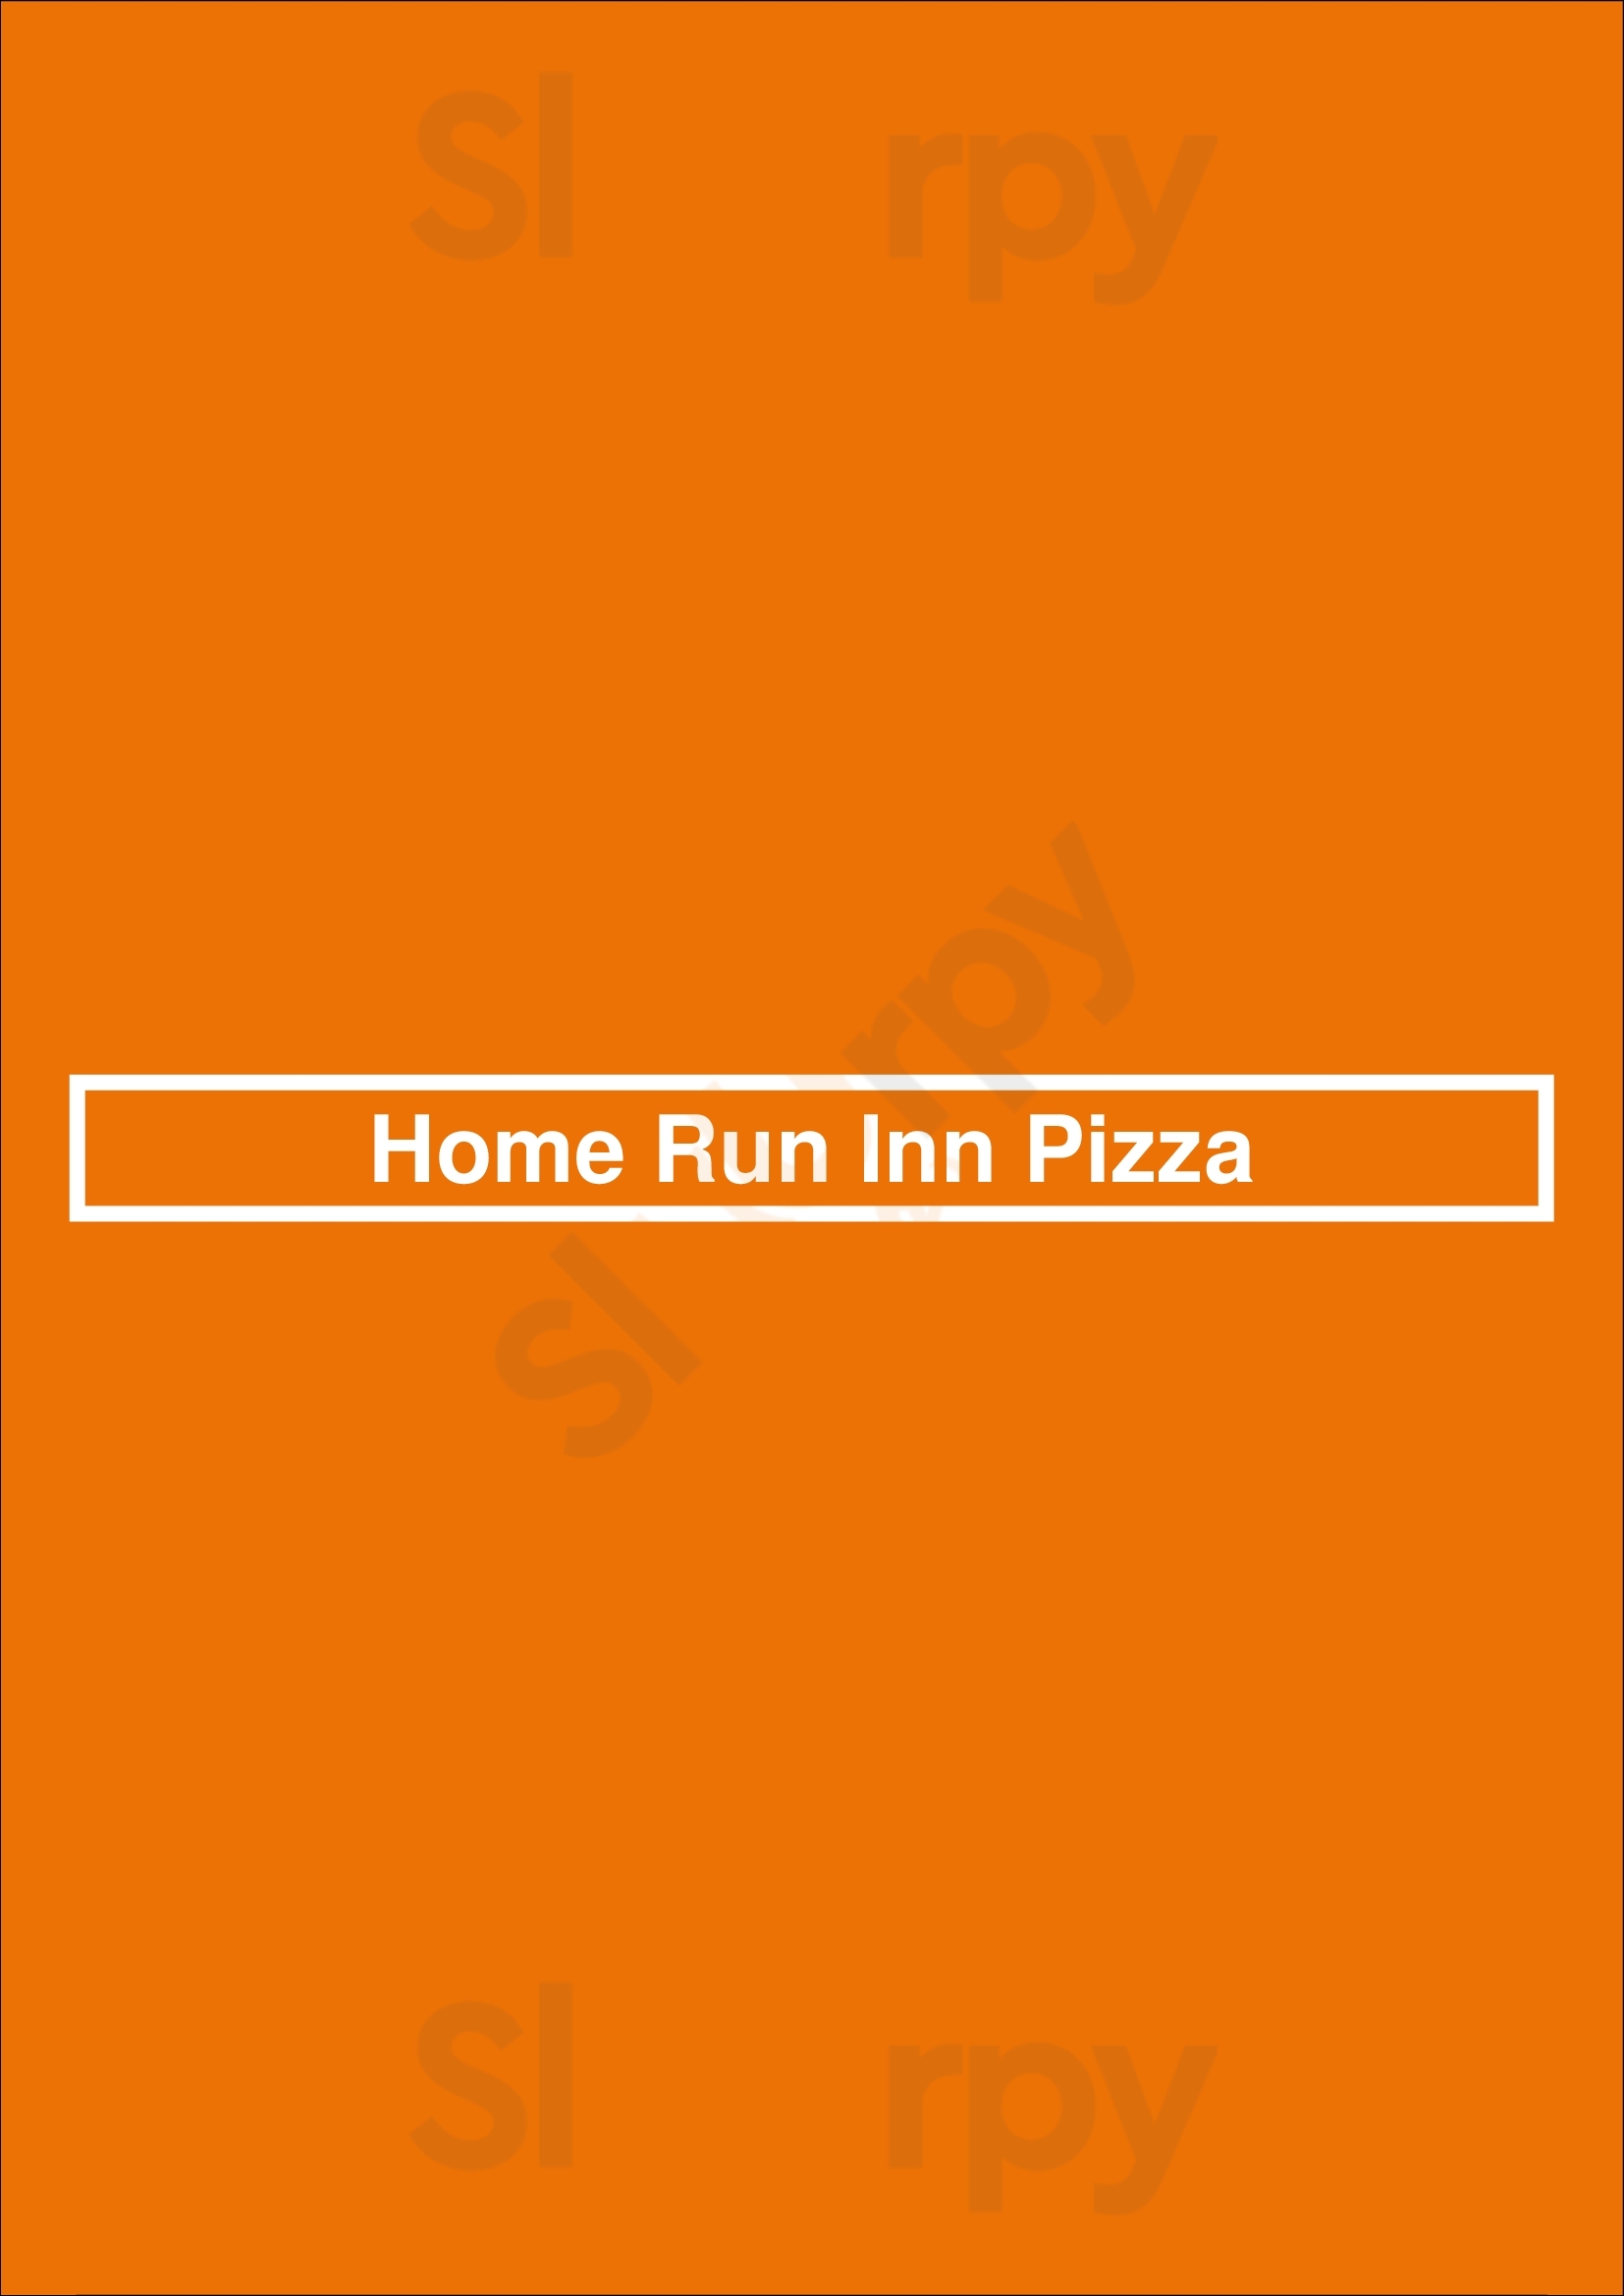 Home Run Inn Pizza Chicago Menu - 1